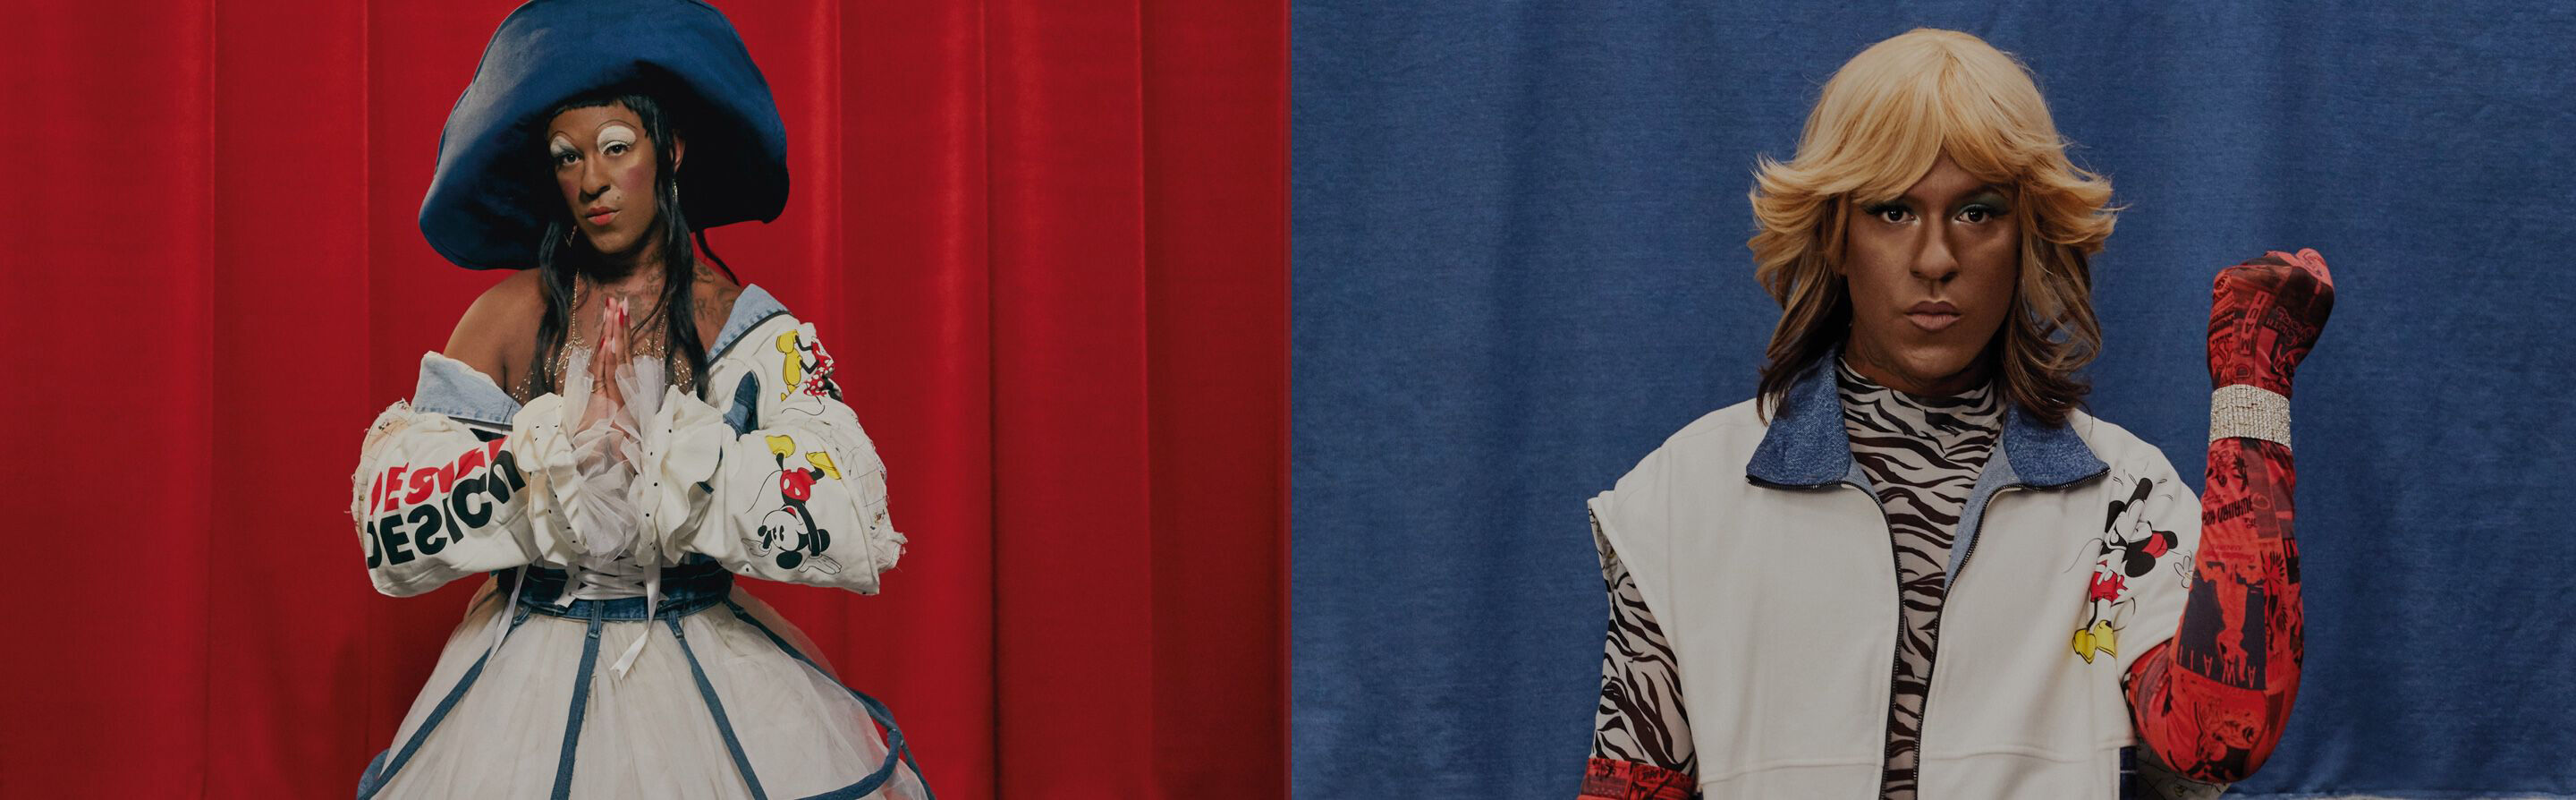 Relanzamos ‘La 86’ jacket con la artista Mykki Blanco a través de una oda al cambio